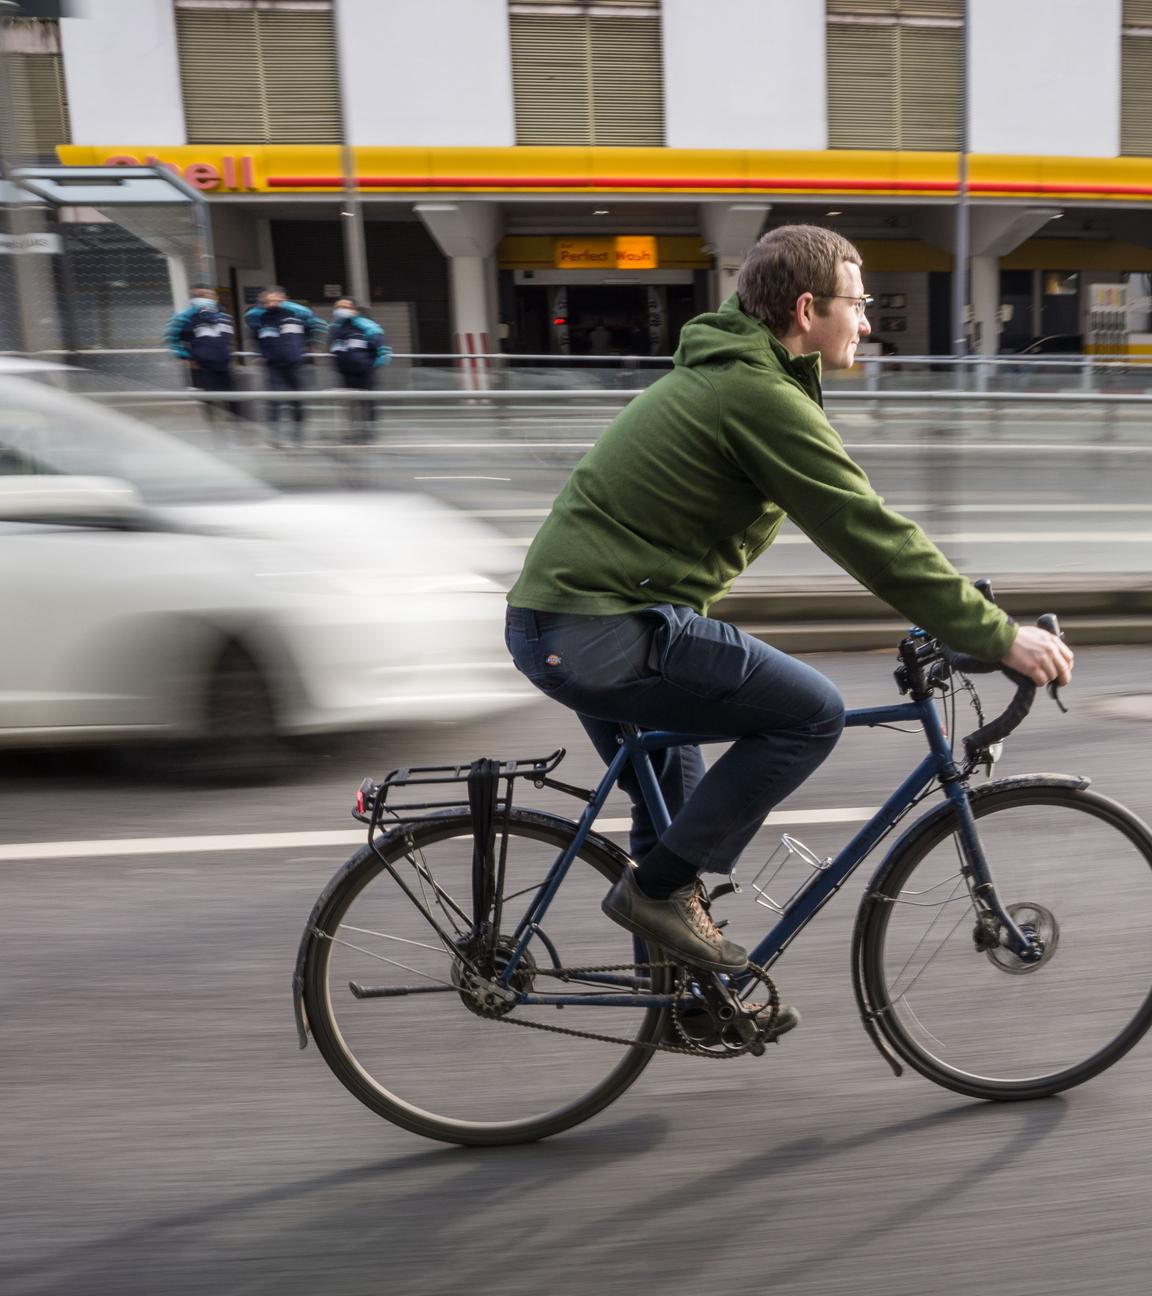 Fahrradfahrer auf Fahrradweg neben Autos,aufgenommen am 02.02.2022 in frankfurt am Main